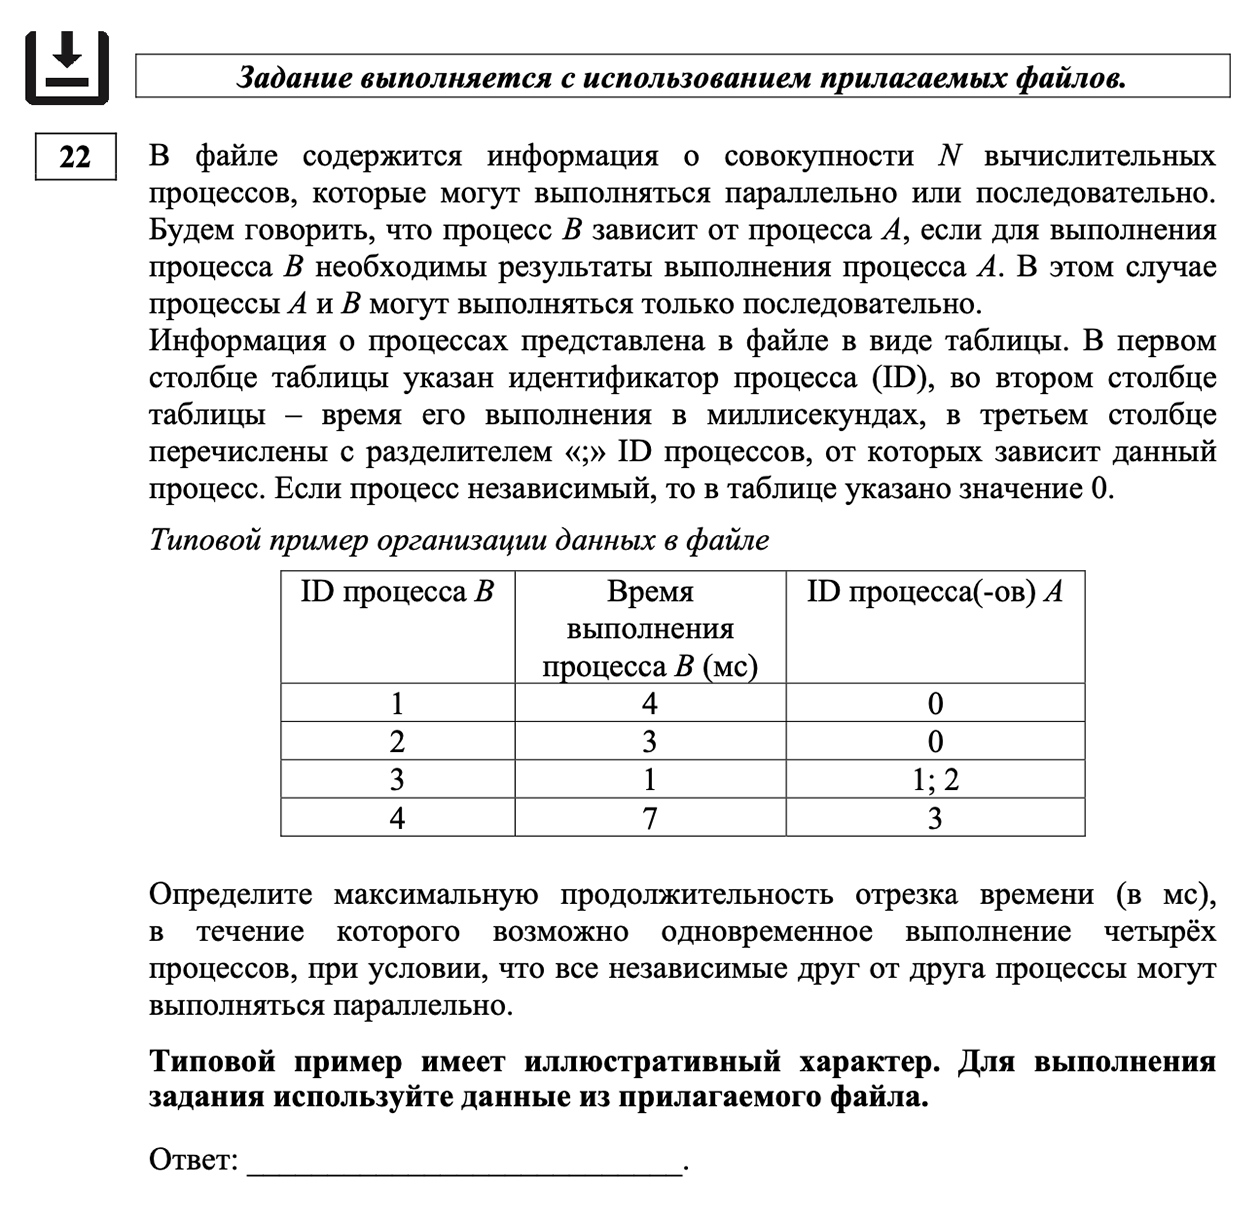 Задание № 22 на построение математических моделей для решения практических задач. Источник: fipi.ru